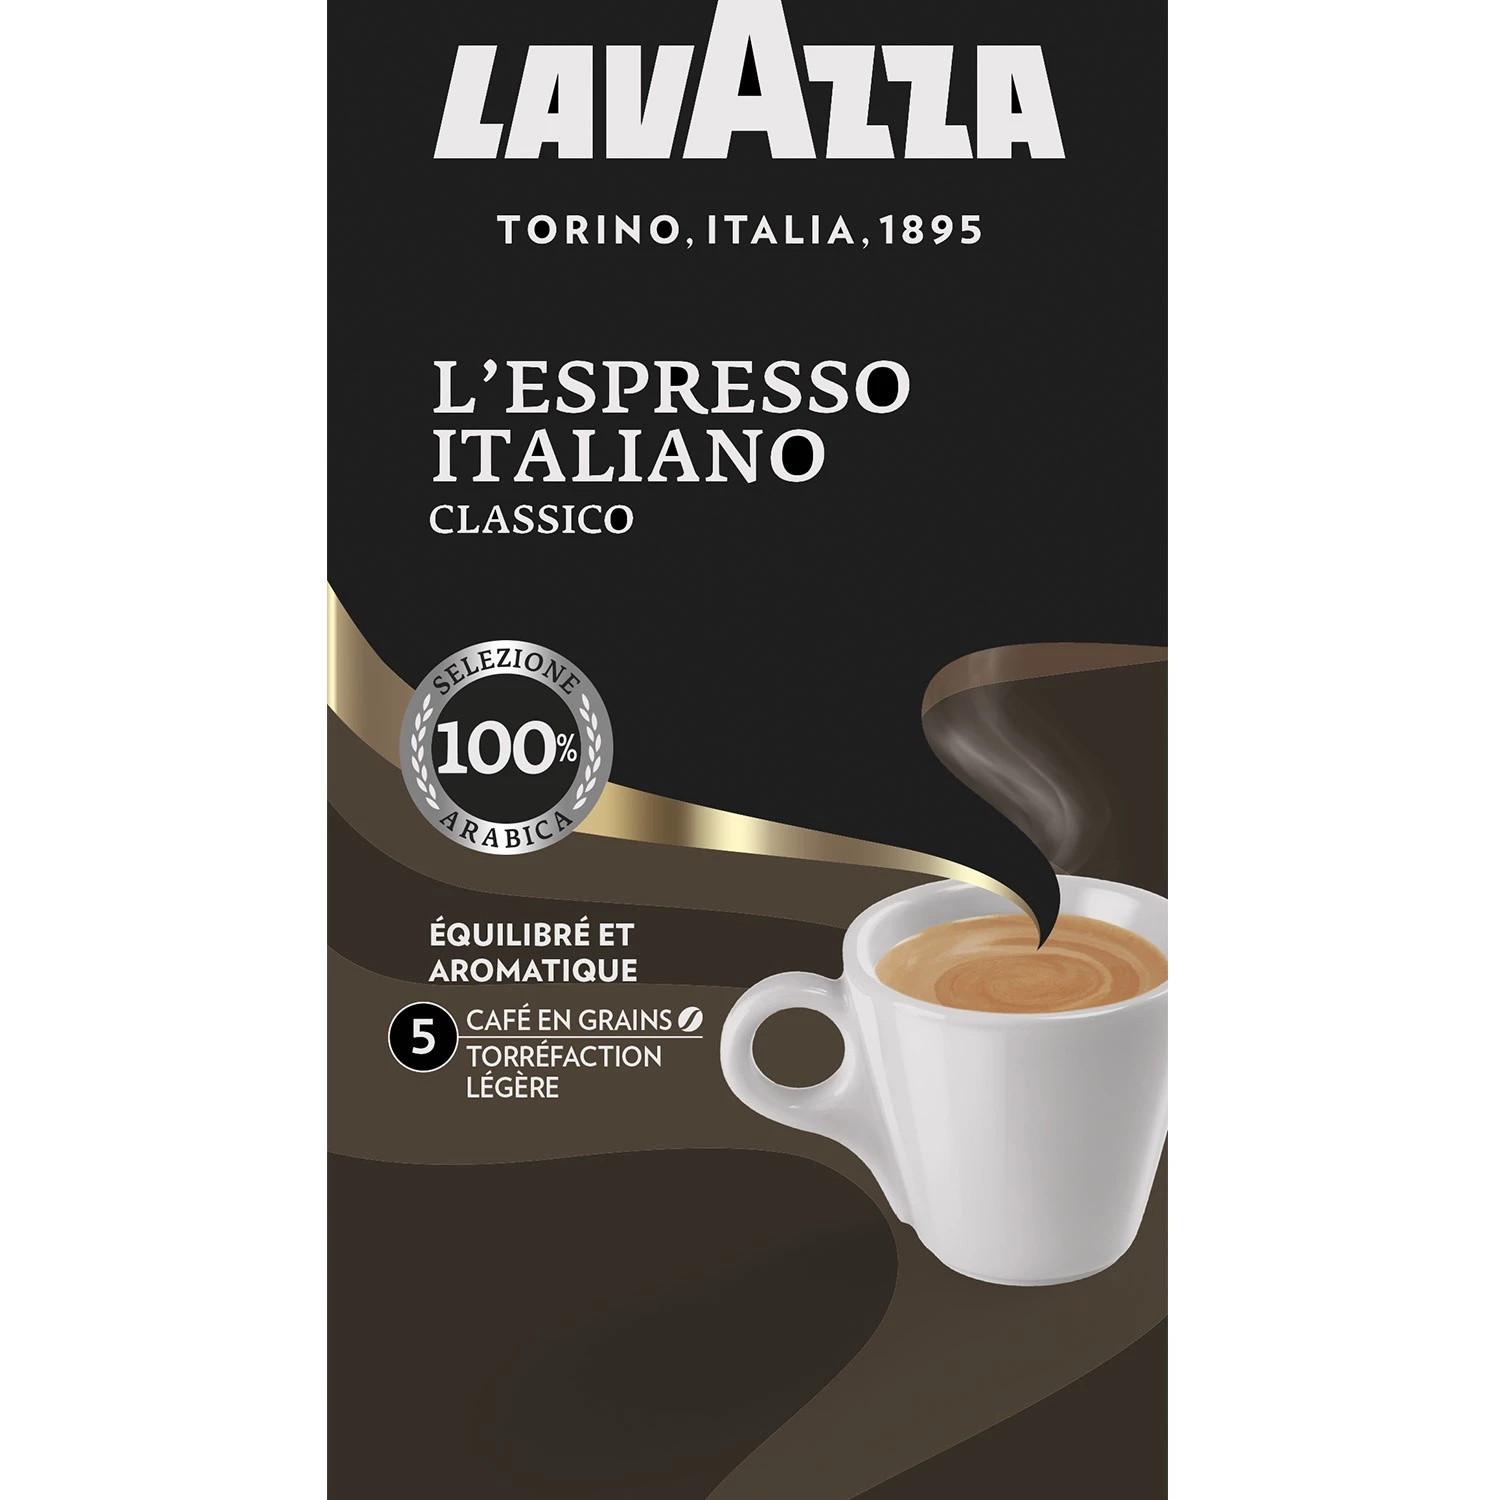 Café en Grains classic Italian espresso 500g - LAVAZZA